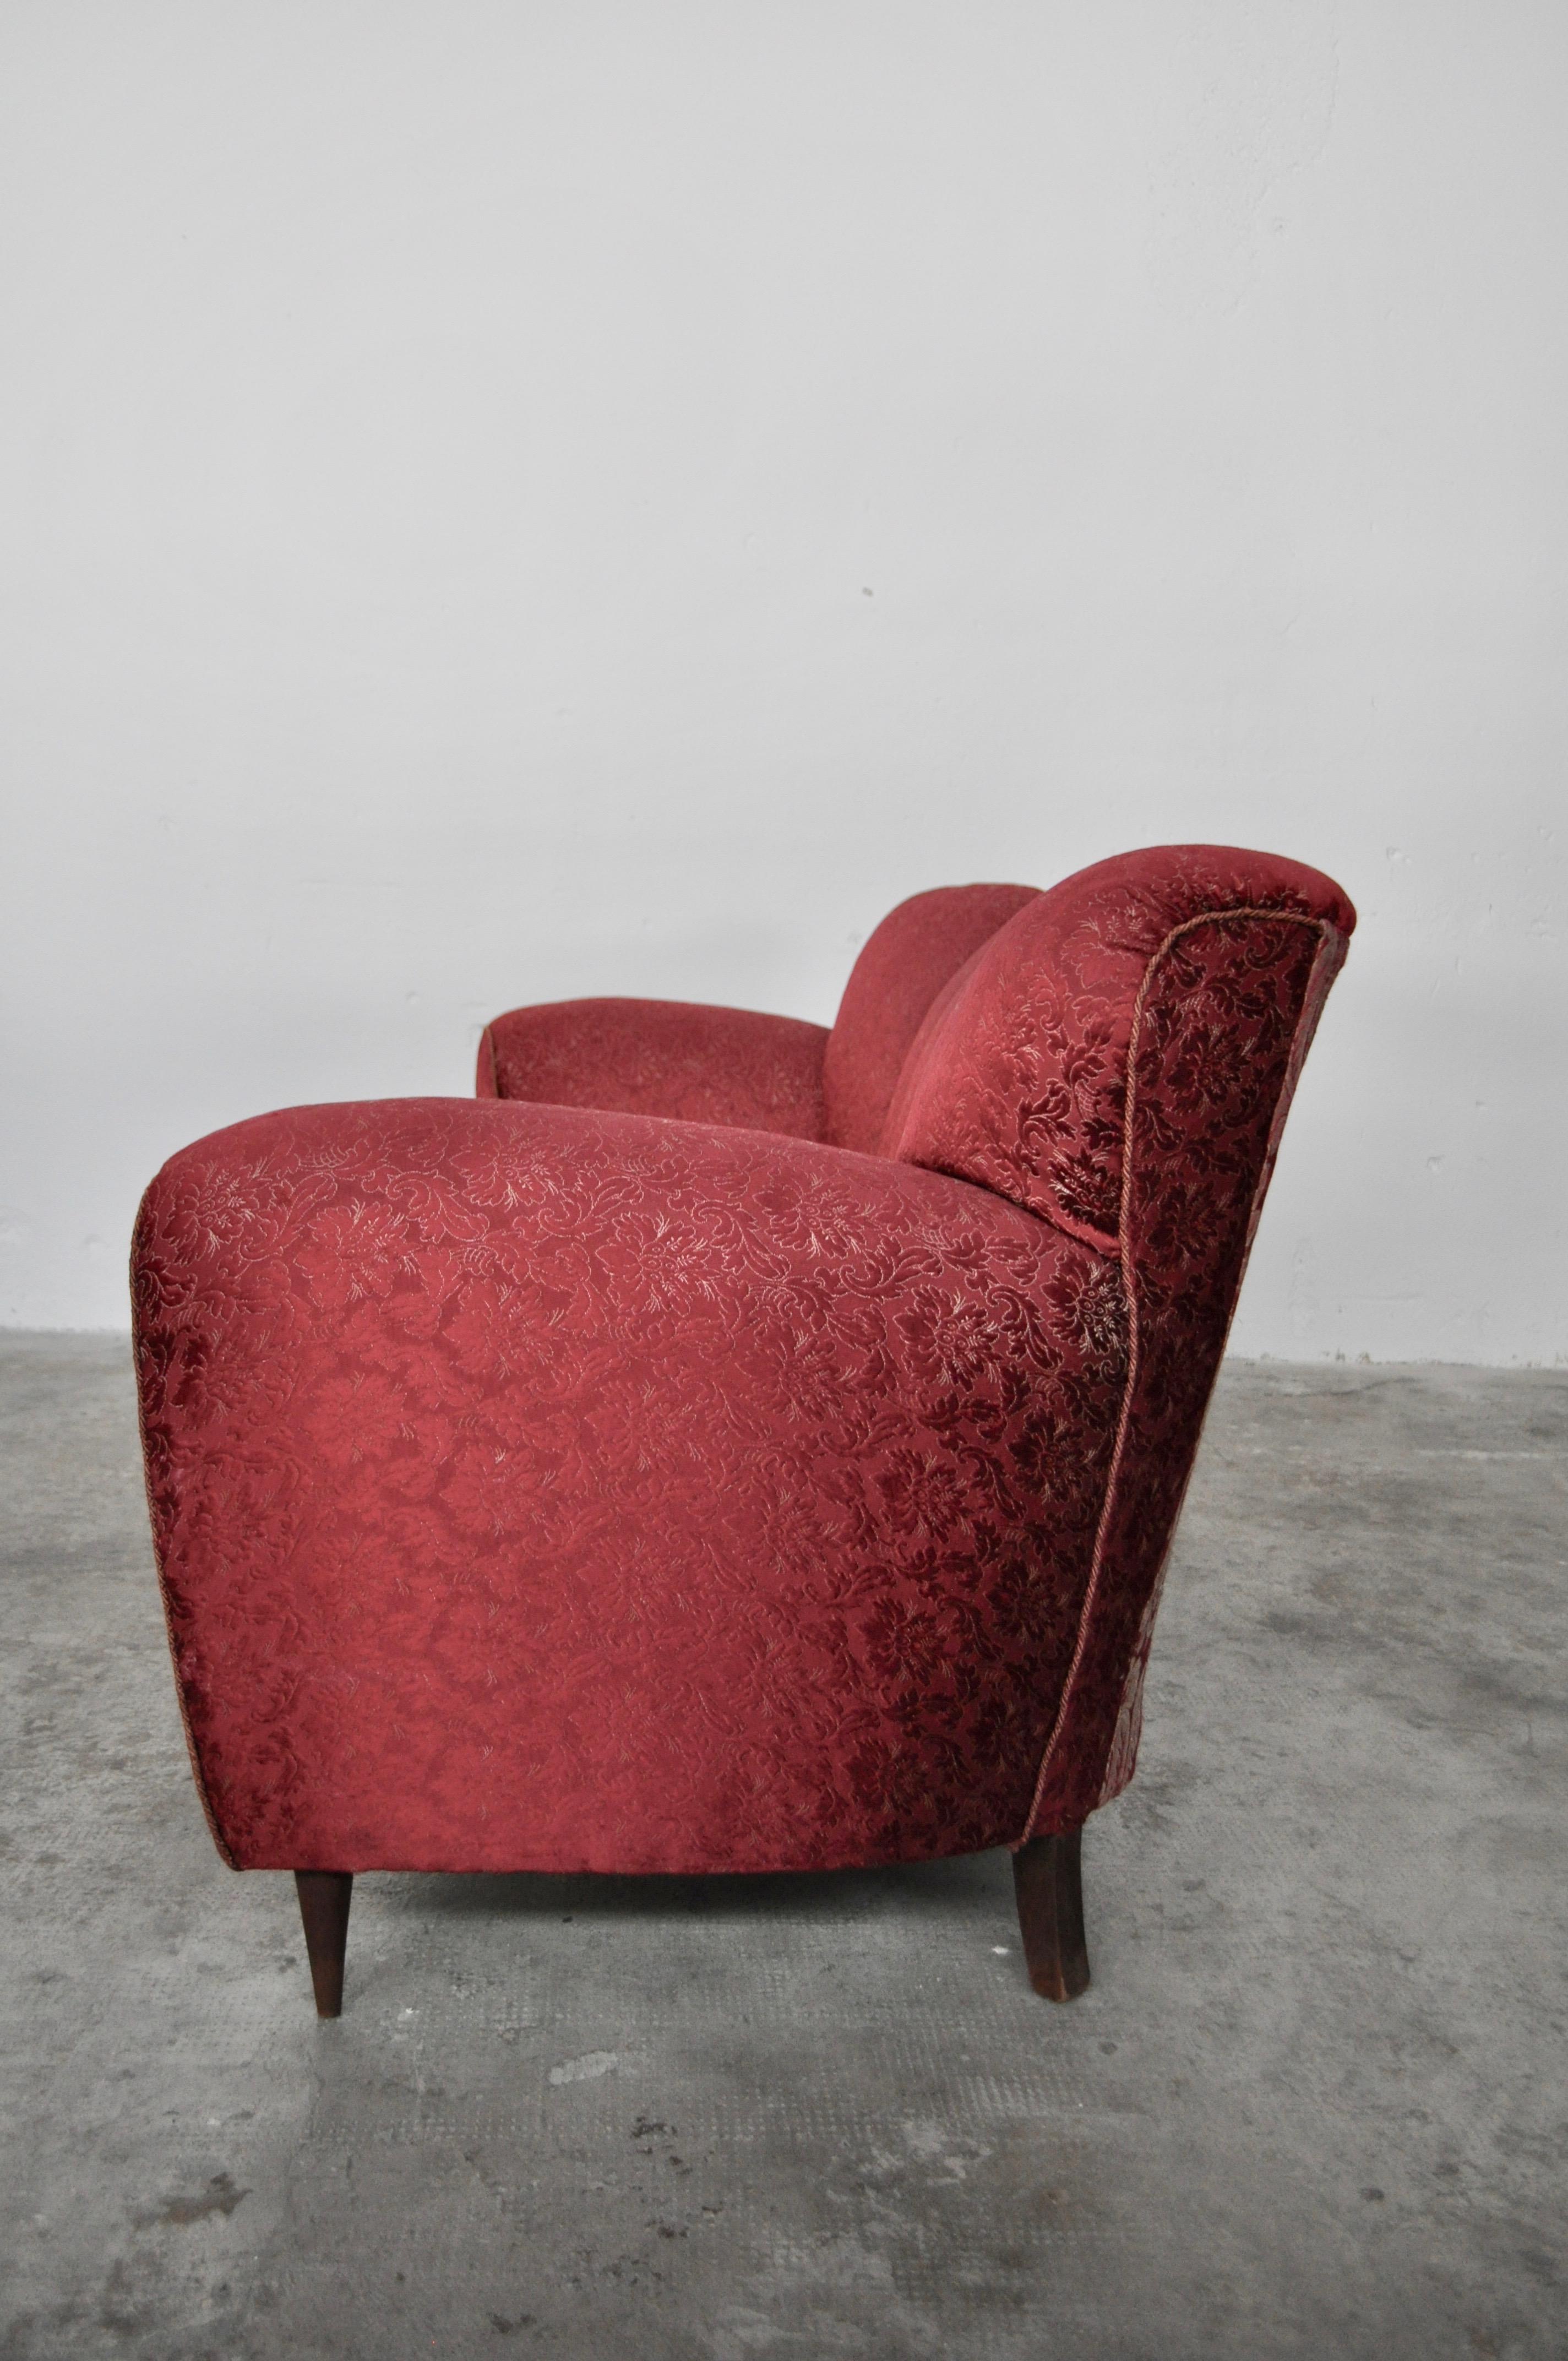 Three-Seat Sofa in Red Fabric, Gold Cord Details, by Paolo Buffa, Italy, 1950 In Good Condition For Sale In Manzano, Friuli Venezia Giulia